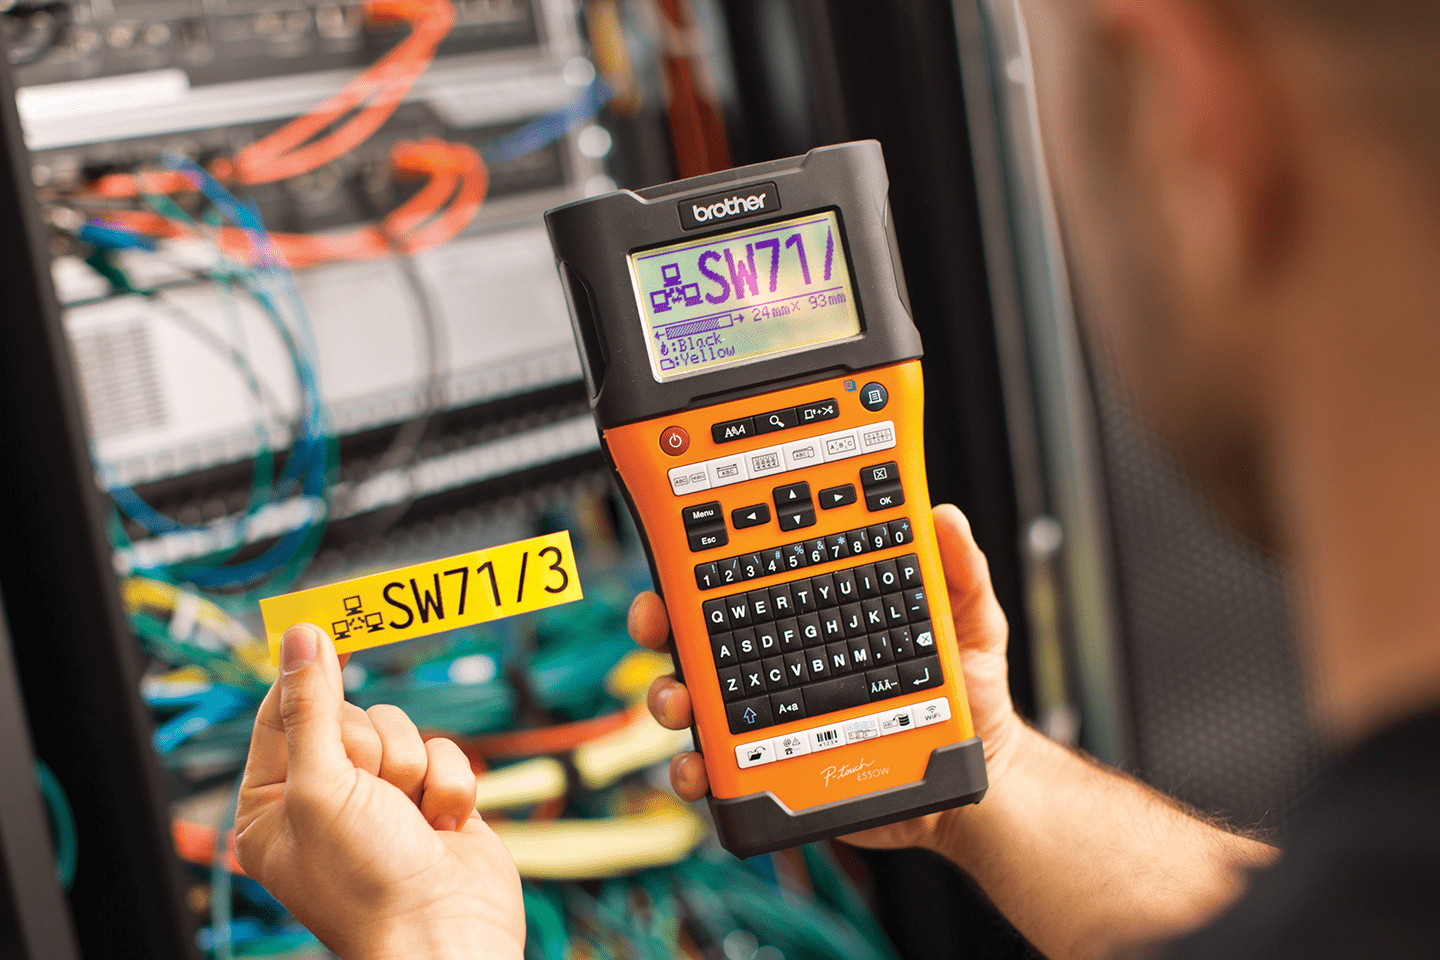 PT-E550WNIVP märknings-kit för nätverksinstallatörer 4